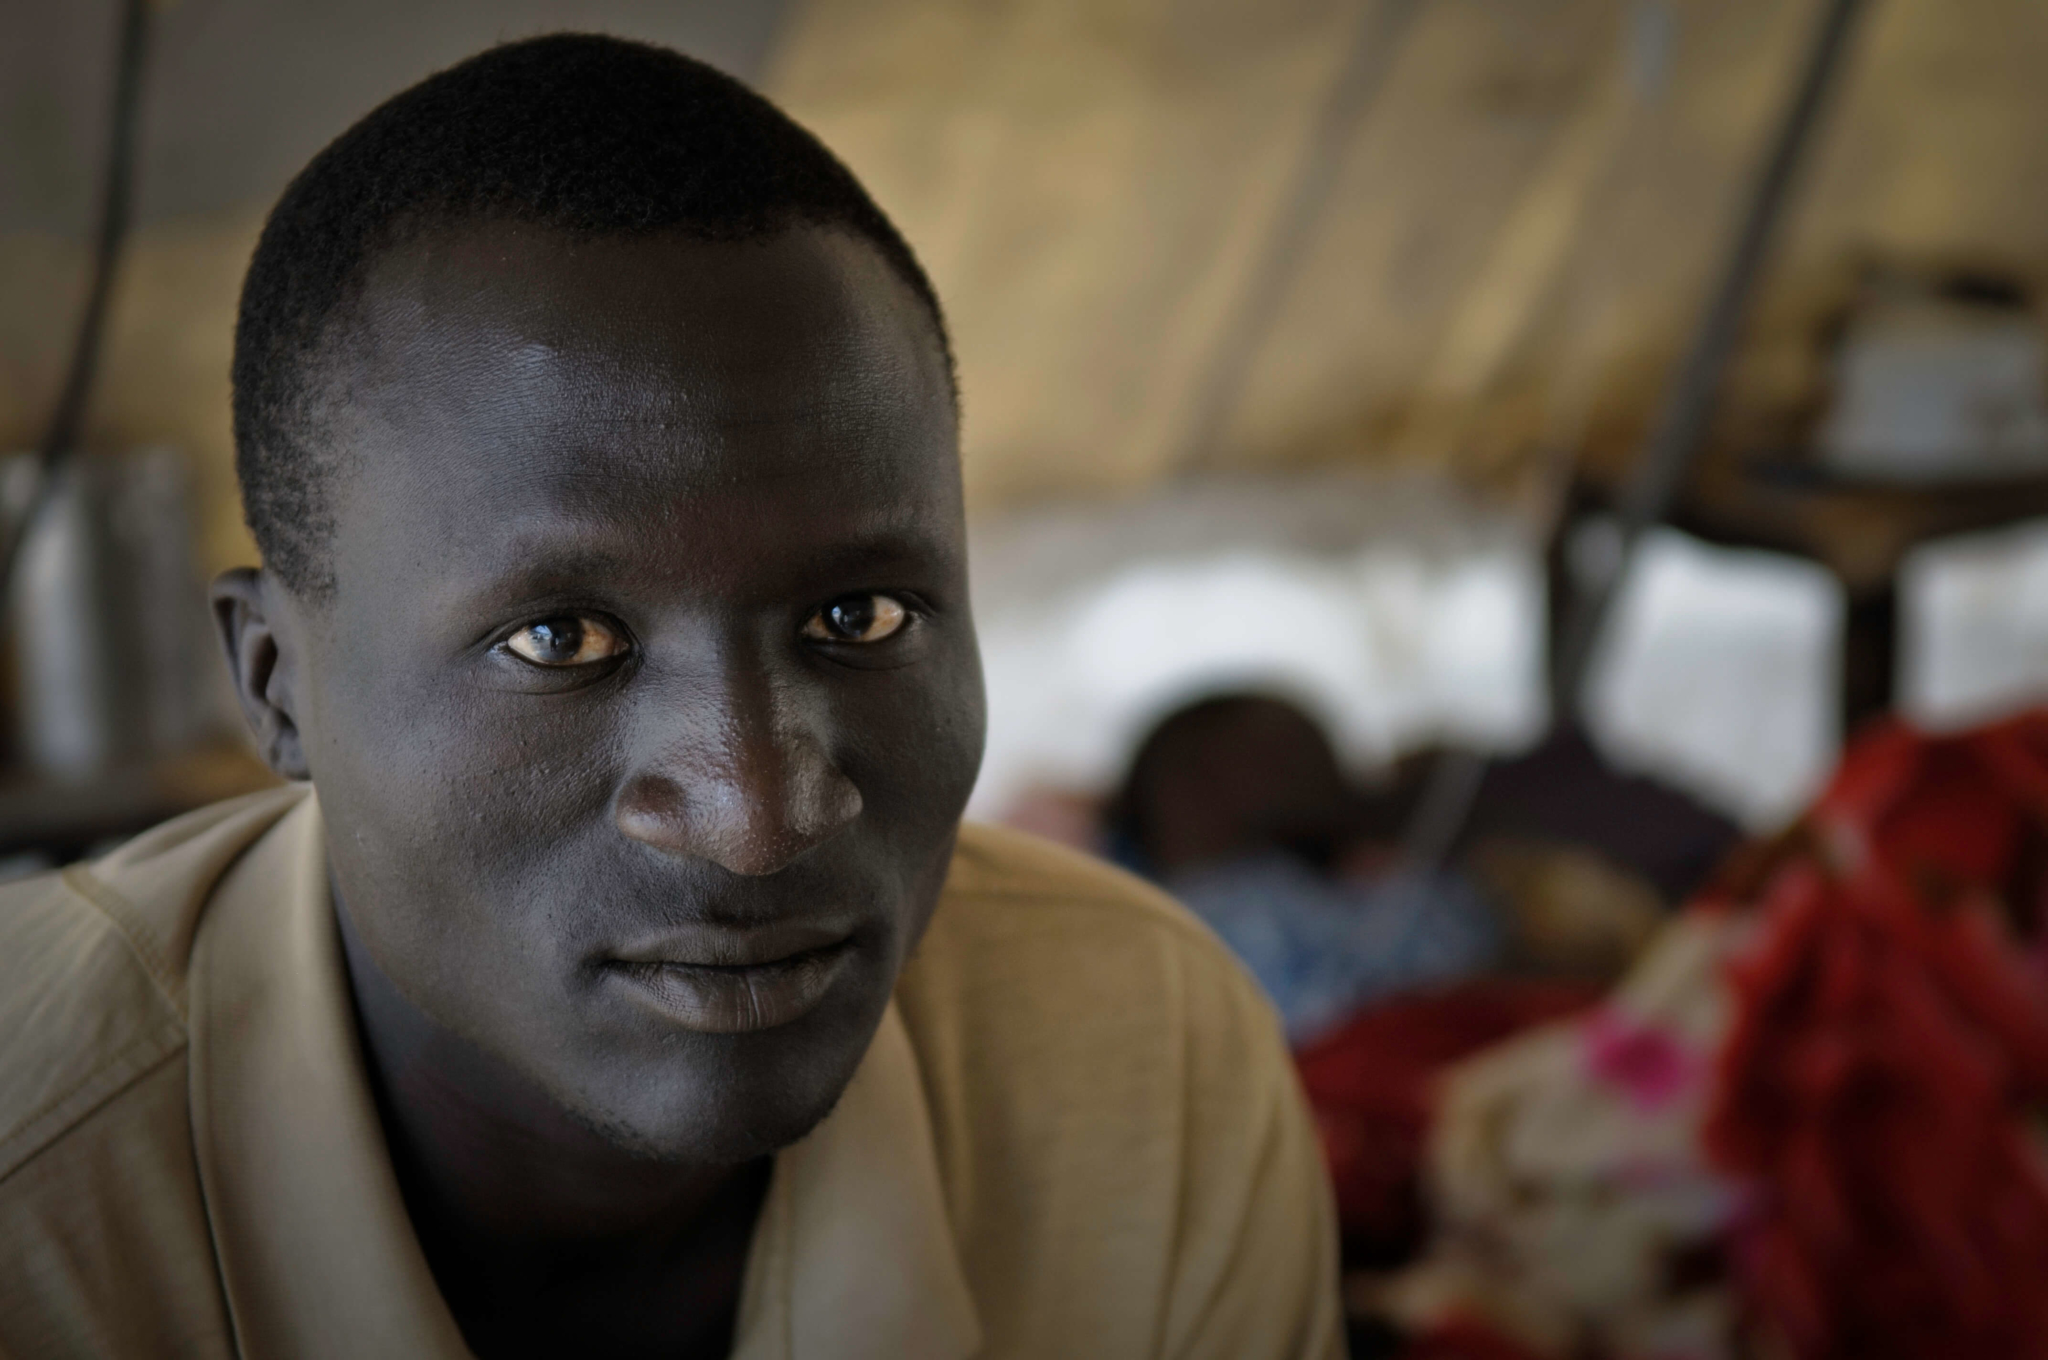 "Fui refugiado na Etiópia, isso já faz muitos anos. Vivemos cerca de 20 anos como refugiados. Finalmente pudemos voltar para nossas casas no Nilo Azul. Agora, os novos conflitos nos obrigaram a vir para o Sudão do Sul", diz Younassa.